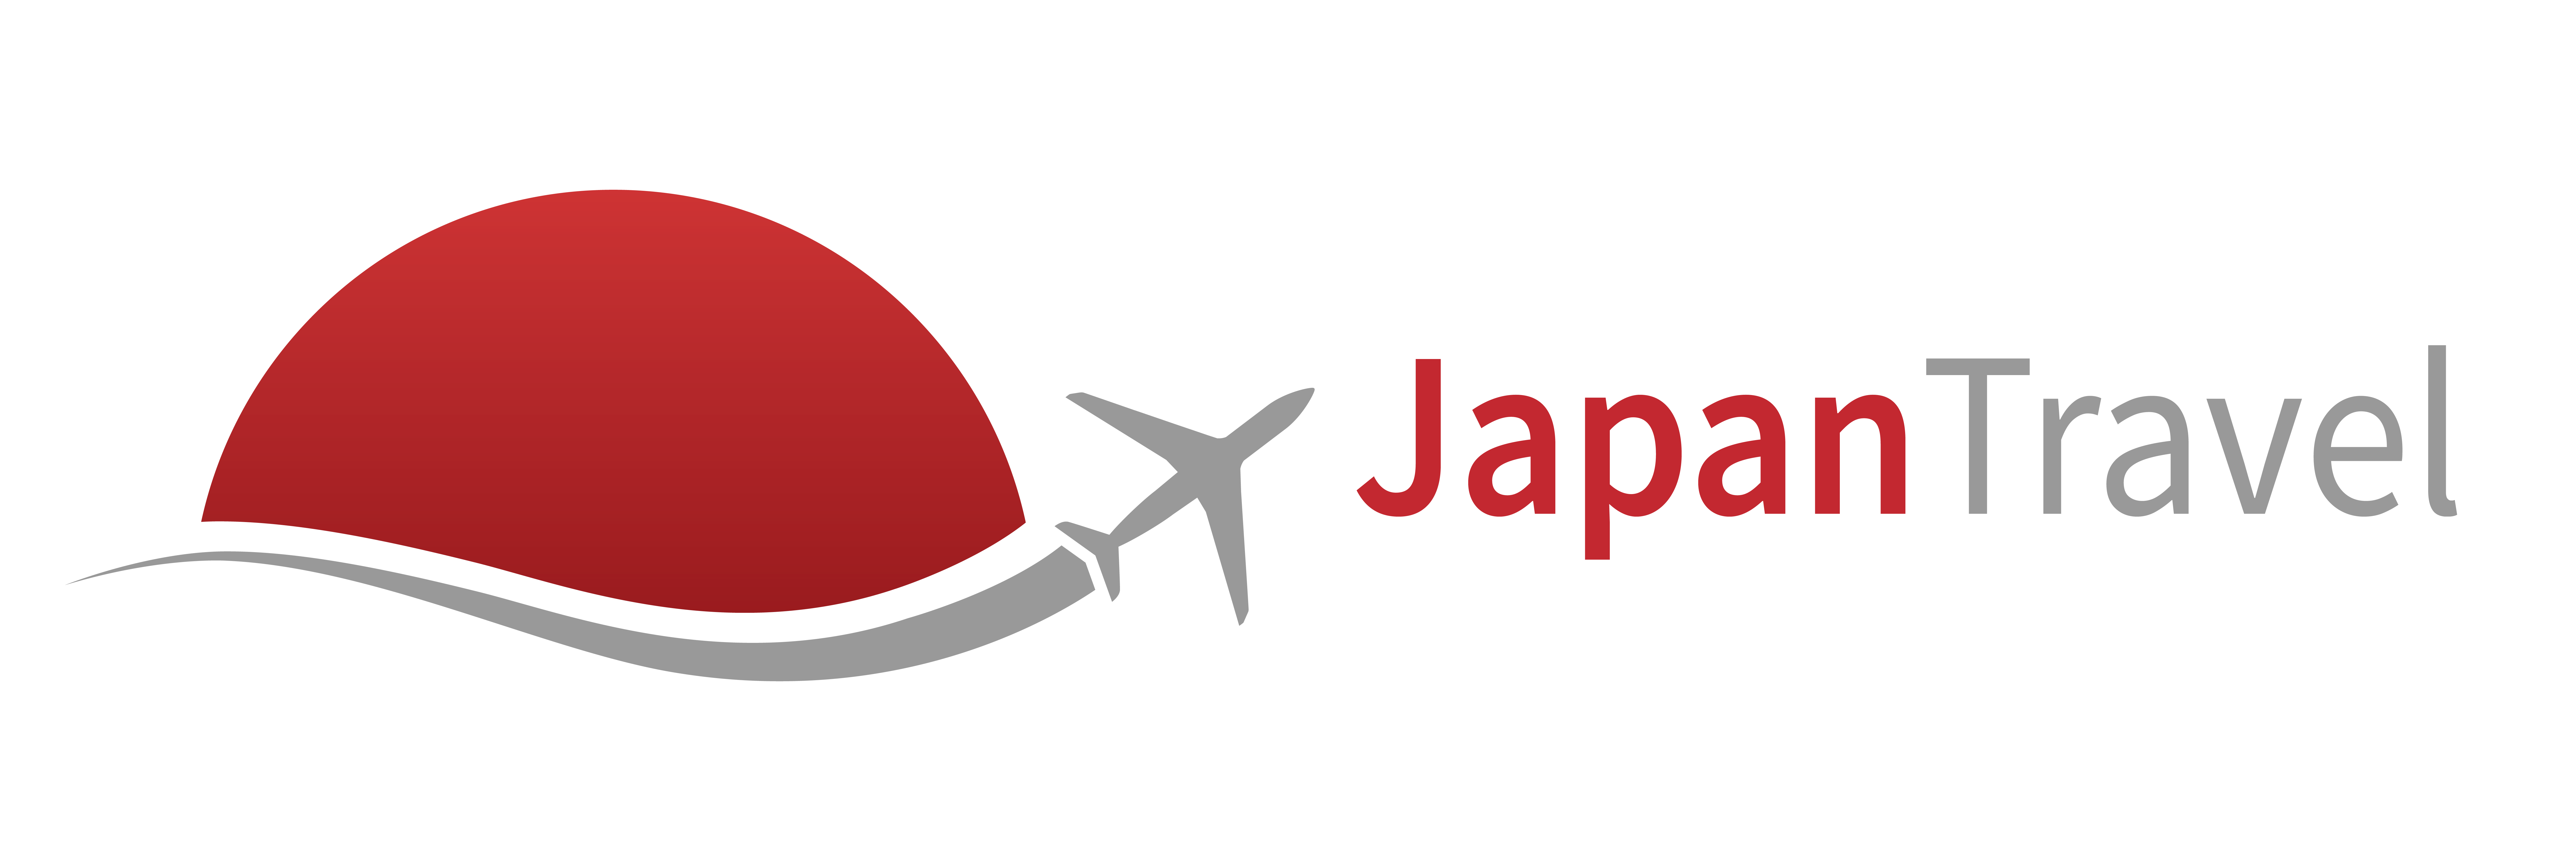 Dein Reiseführer für Japan